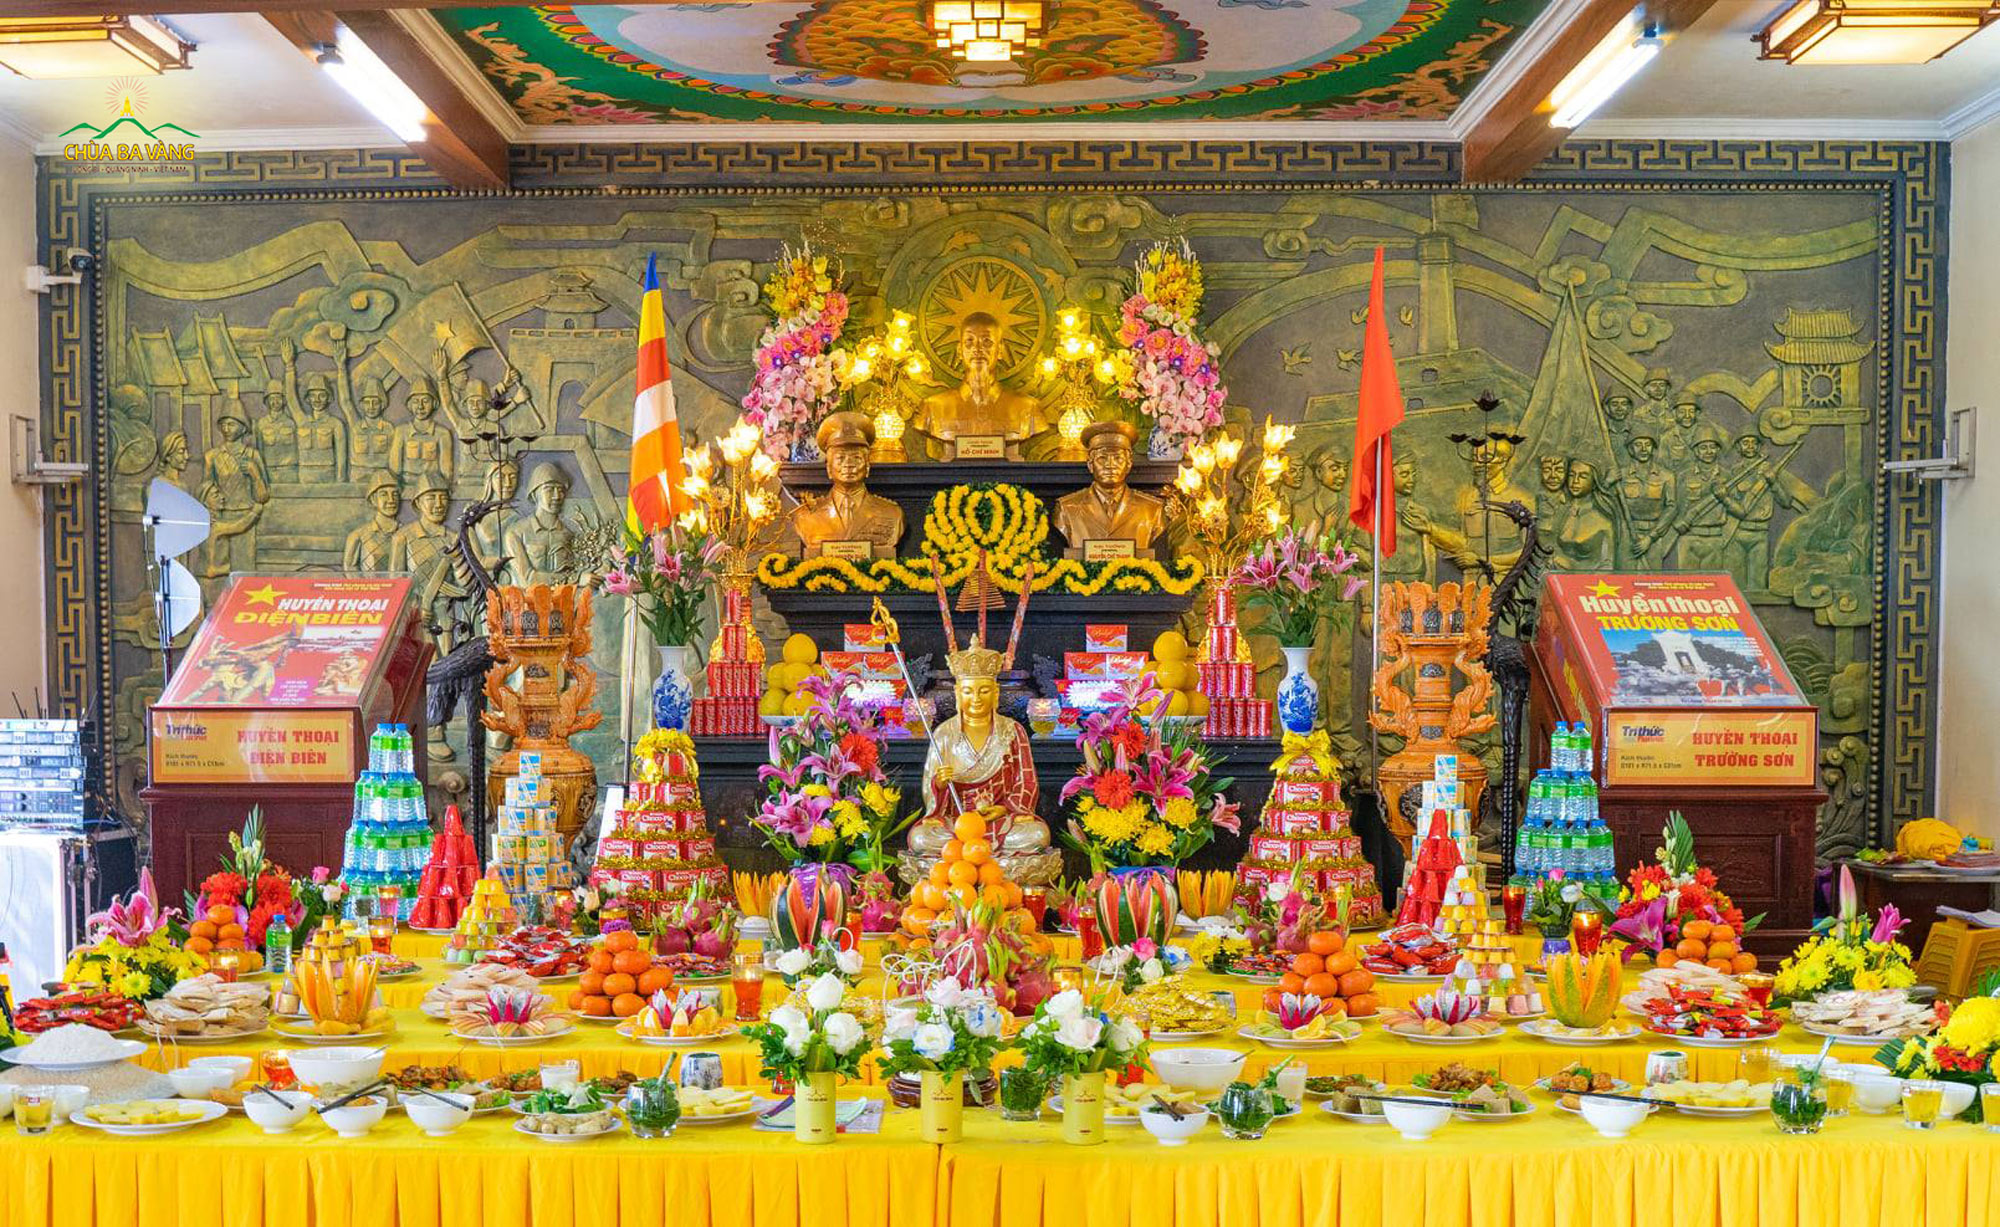 Đàn lễ trang nghiêm, tố hảo được các Phật tử chuẩn bị cho lễ khai đàn tụng kinh cầu siêu anh hùng liệt sĩ